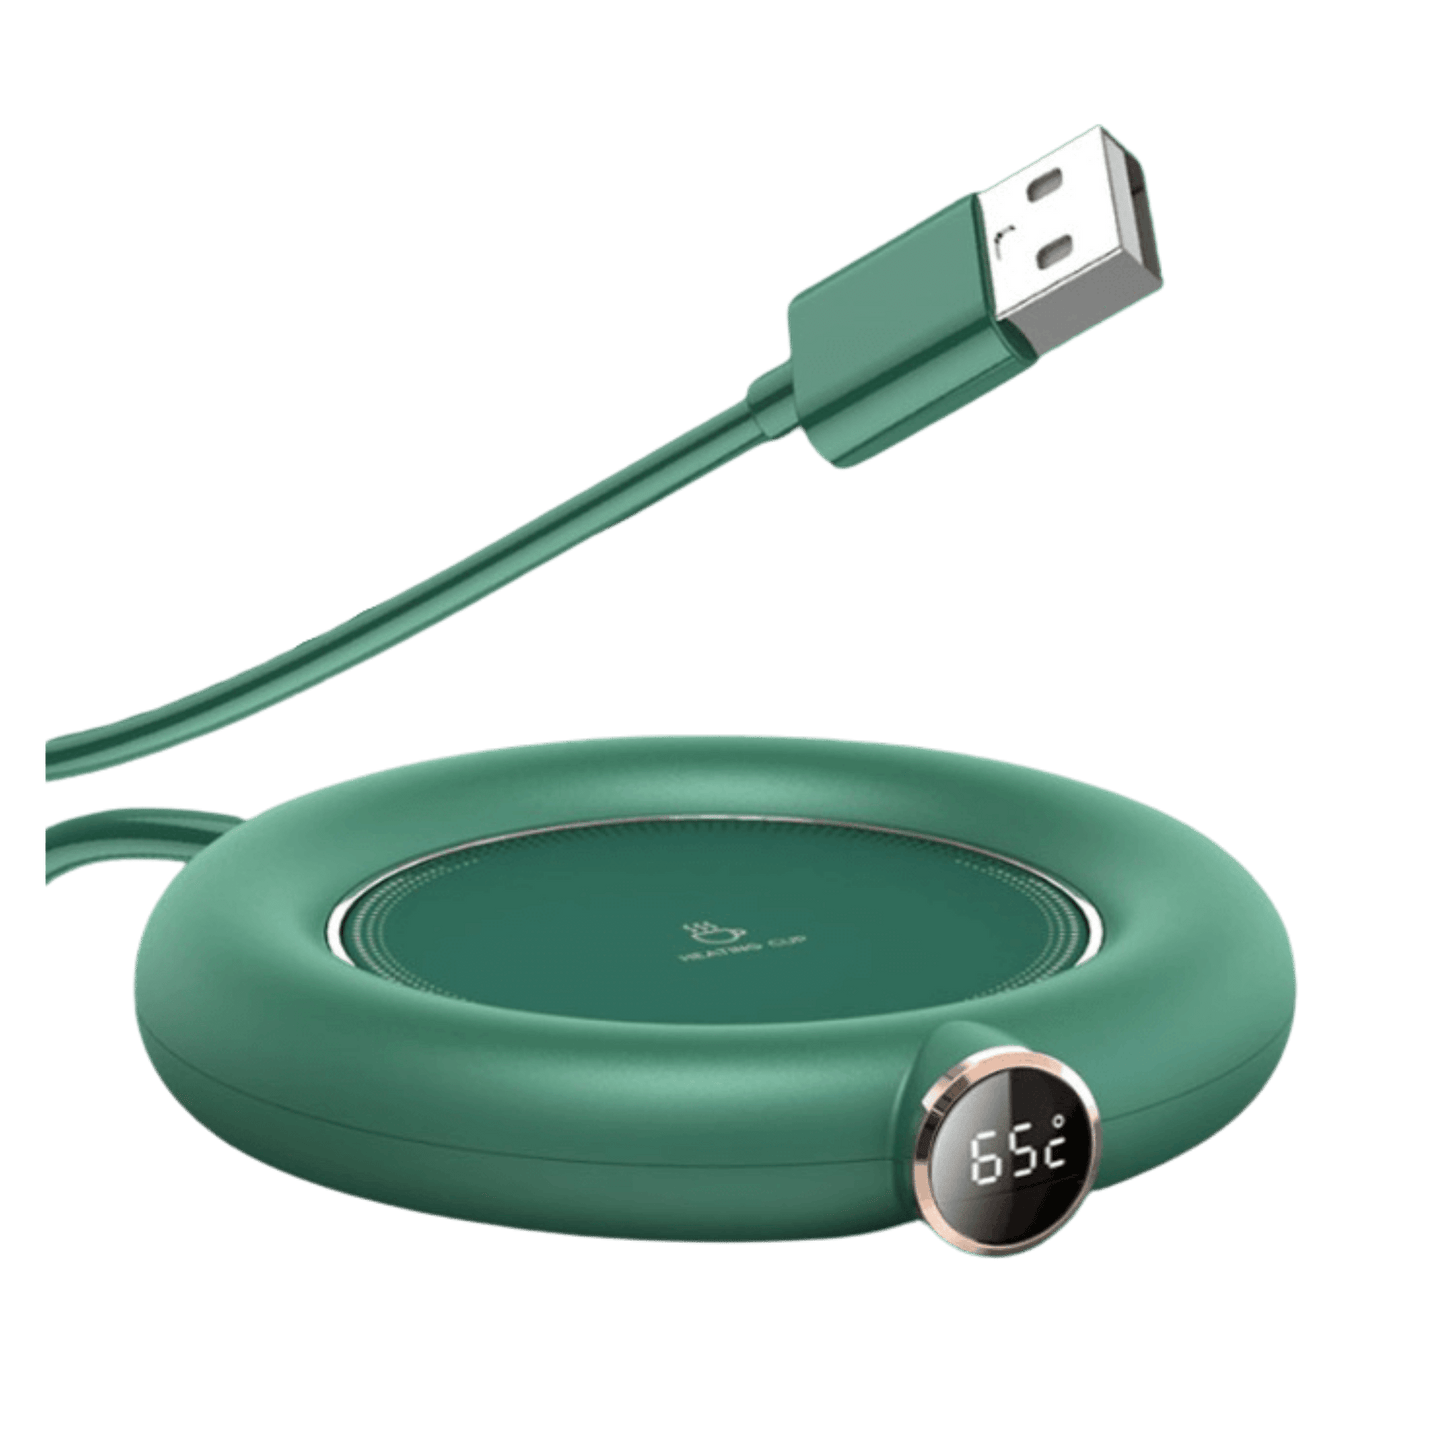 USB Mug Warmer - Innovations